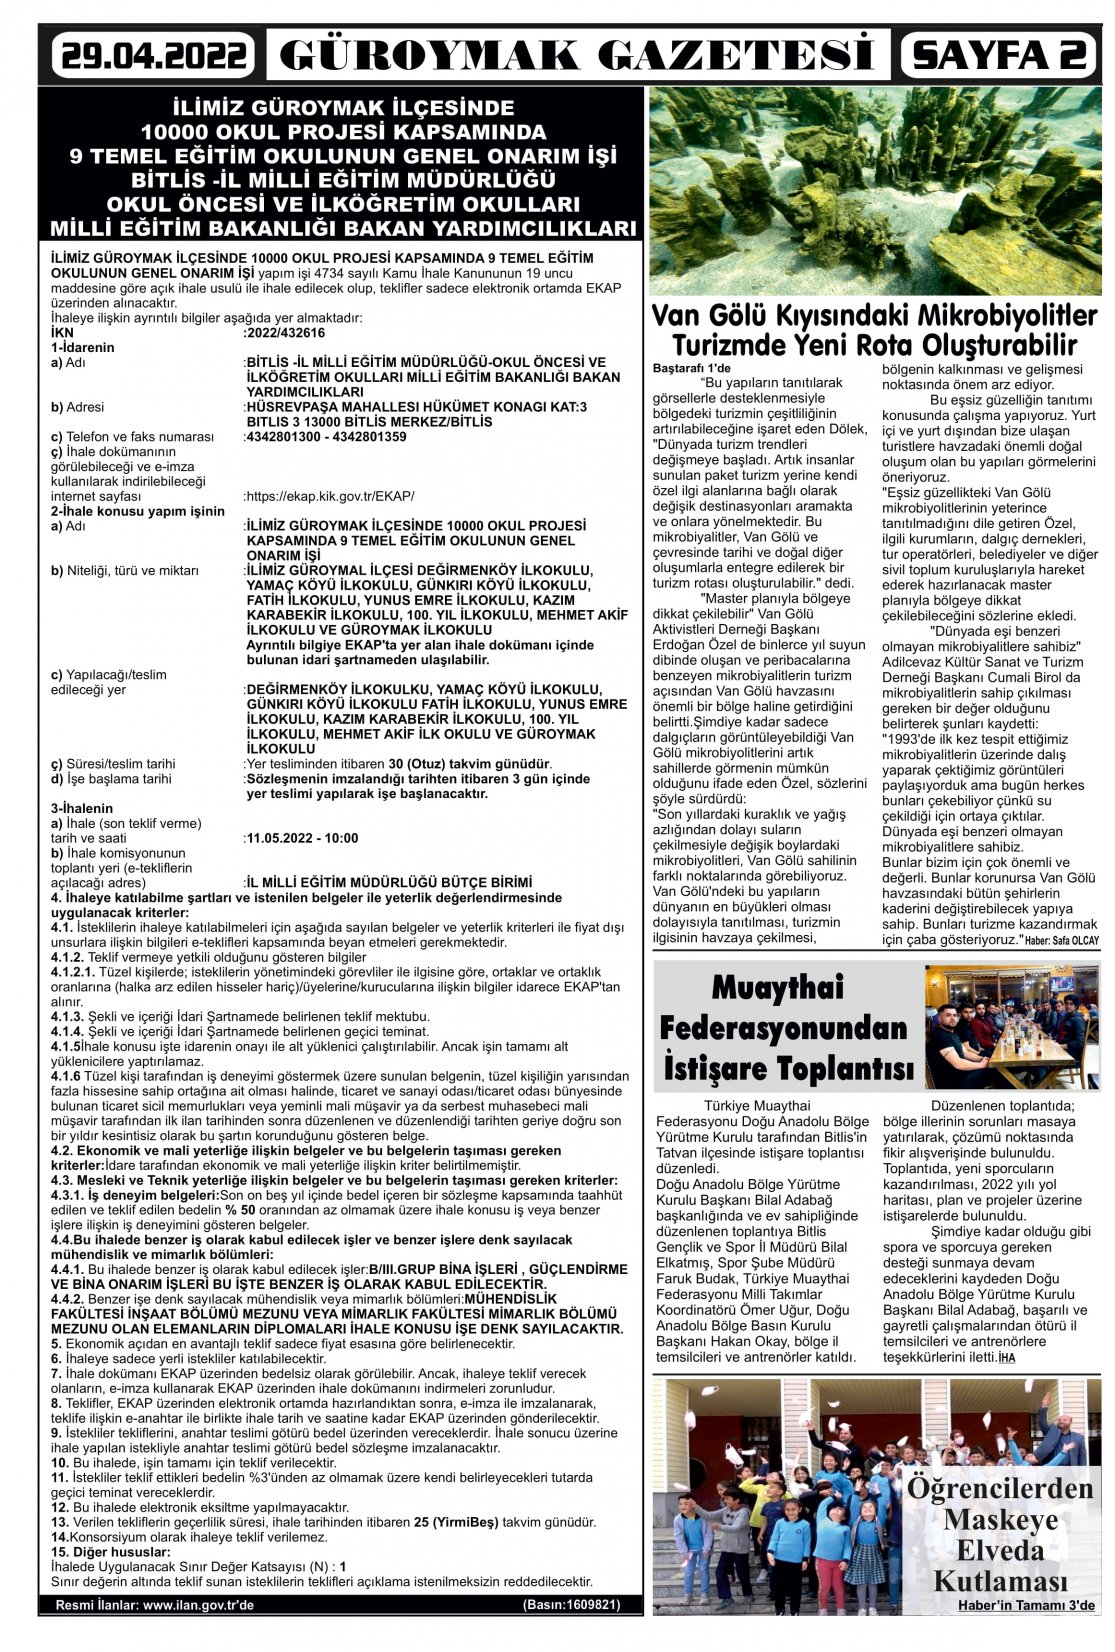 Güroymak Gazetesi 2.jpg Sayılı Gazete Küpürü